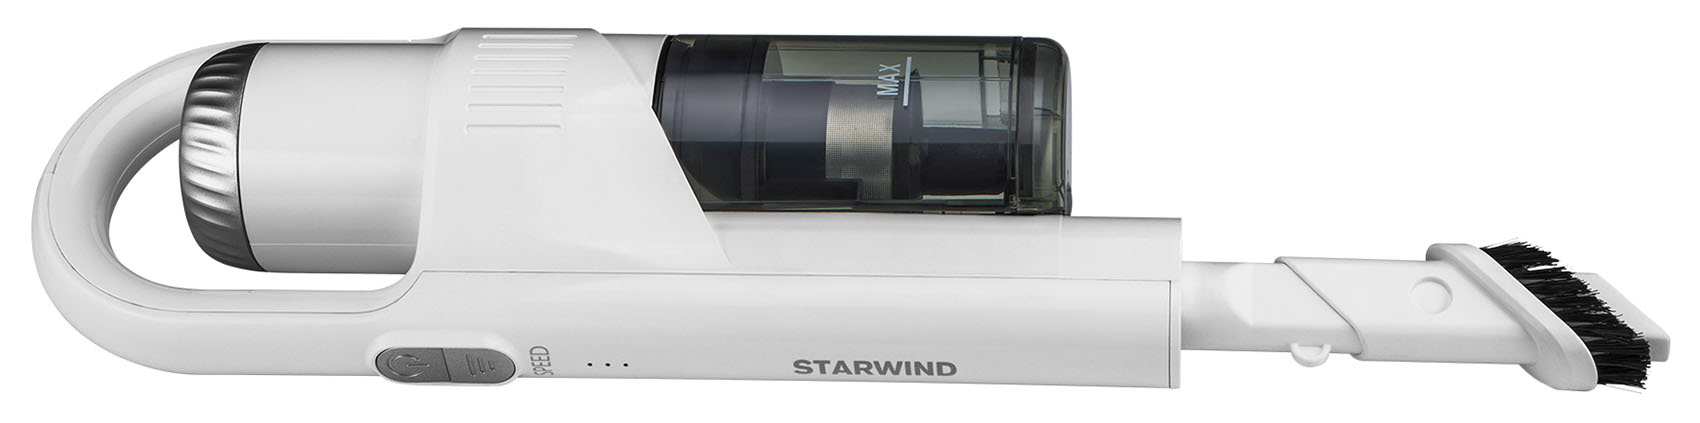 Ручной пылесос Starwind SCH9930 белый от магазина Старвинд